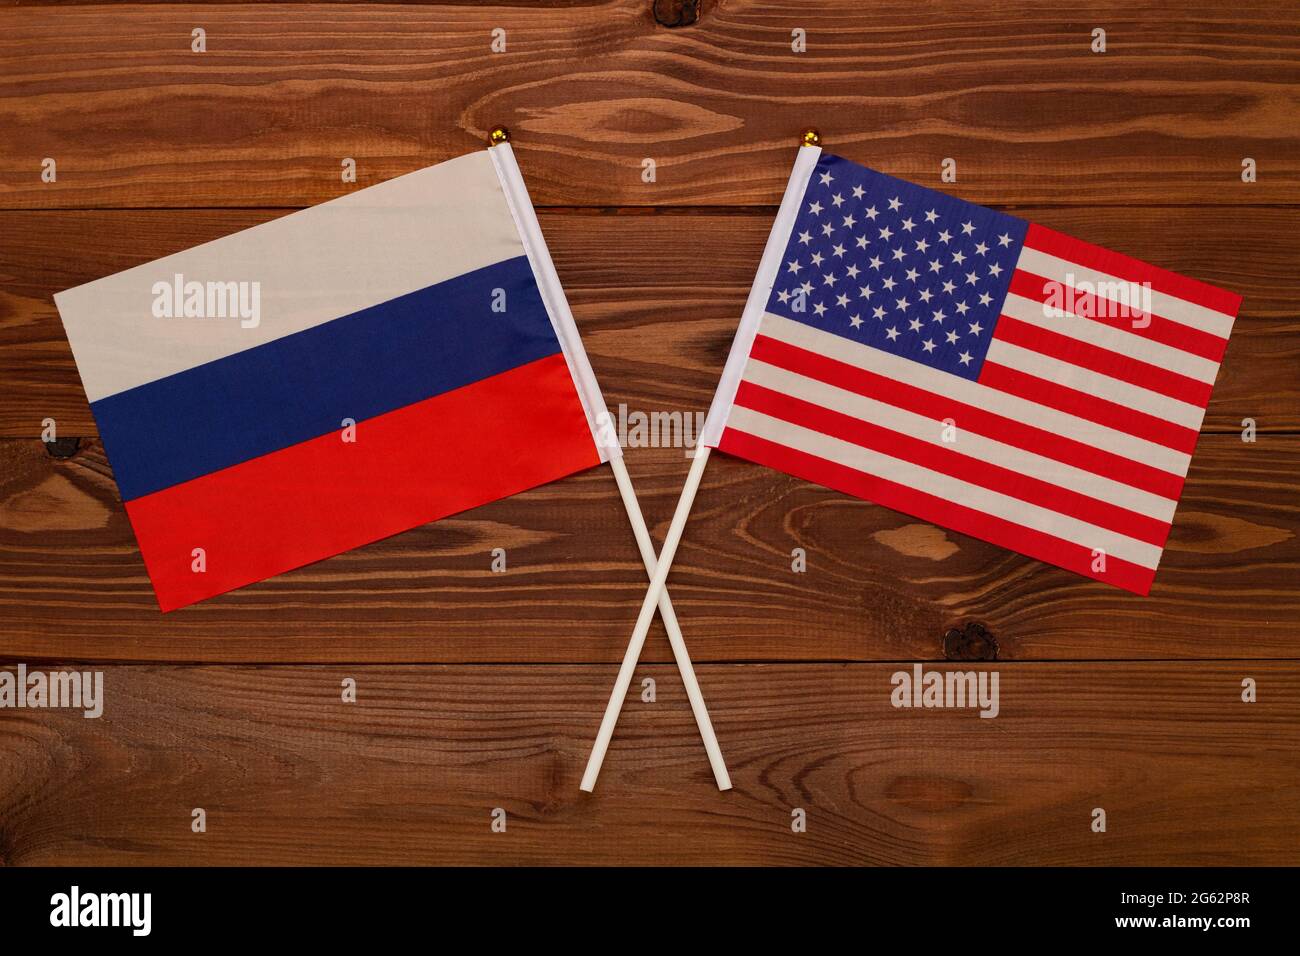 Die Flagge Russlands und die Flagge der USA kreuzten miteinander. Das Bild veranschaulicht die Beziehung zwischen den Ländern. Fotografie für Video-Nachrichten im Fernsehen Stockfoto